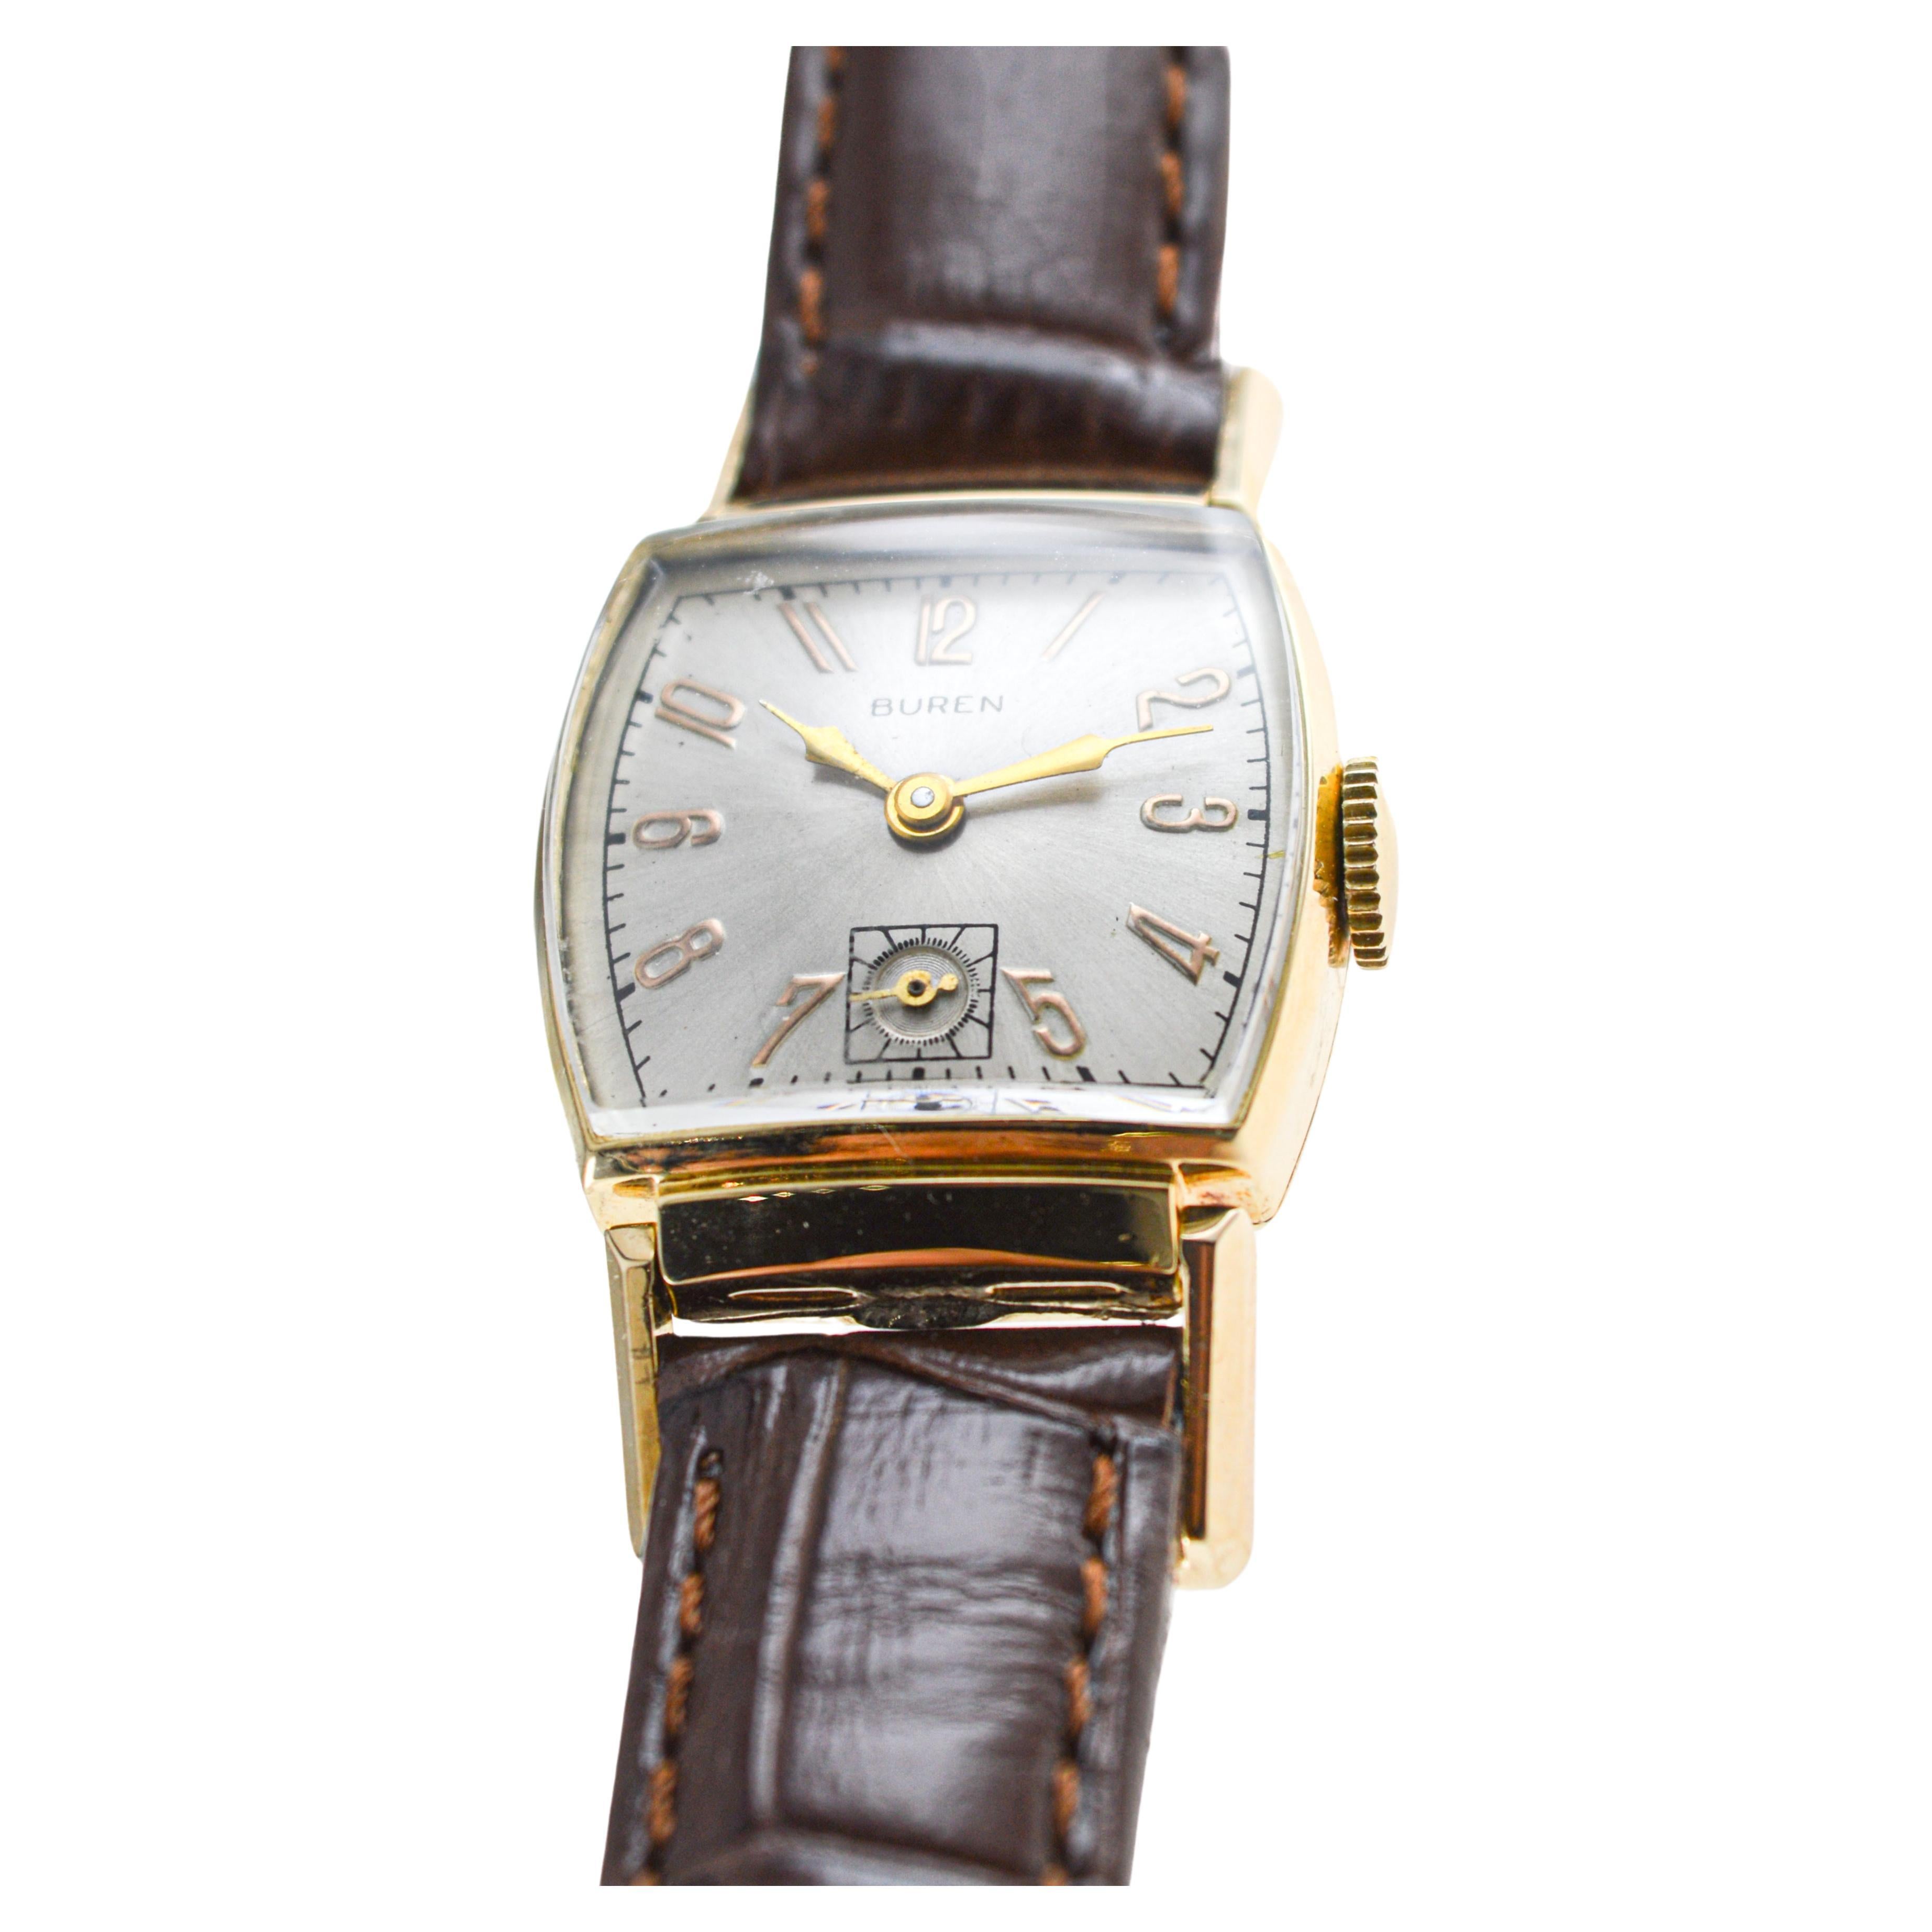 buren vintage watch